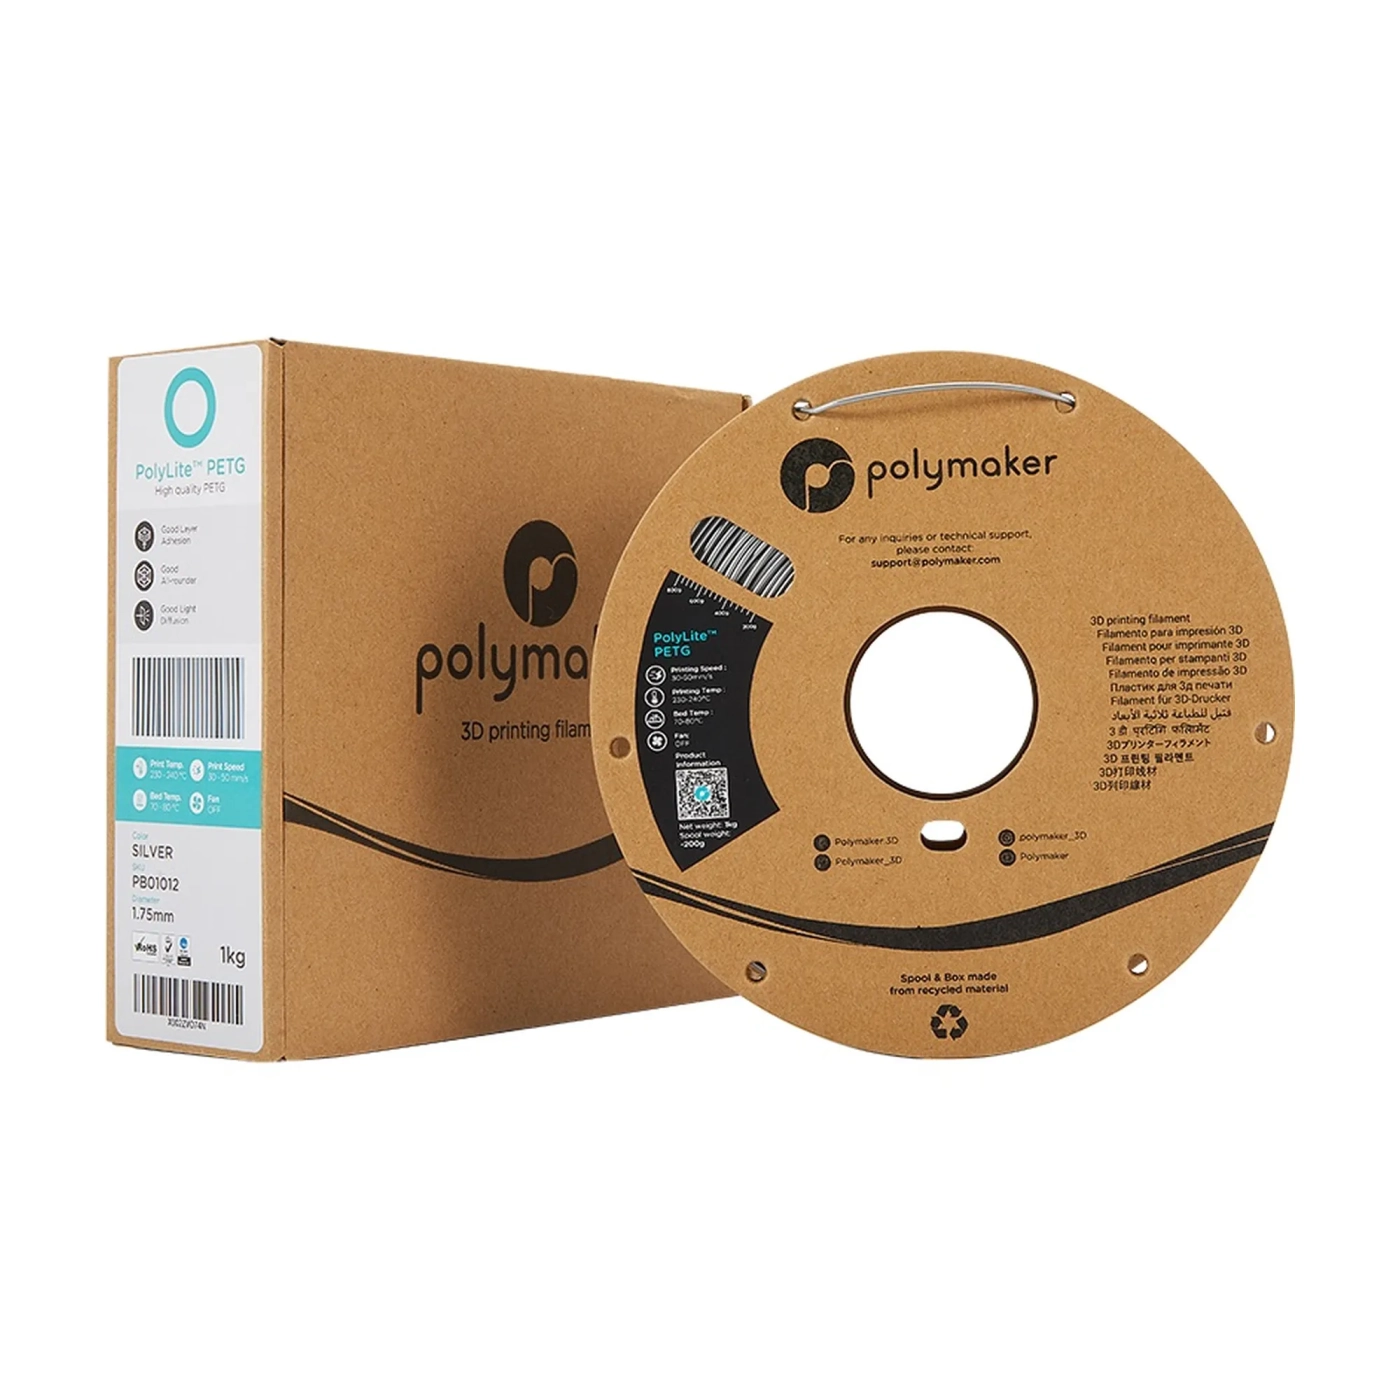 Купить PolyLite PETG Filament (пластик) для 3D принтера Polymaker 1кг, 1.75мм, серебряный - фото 3